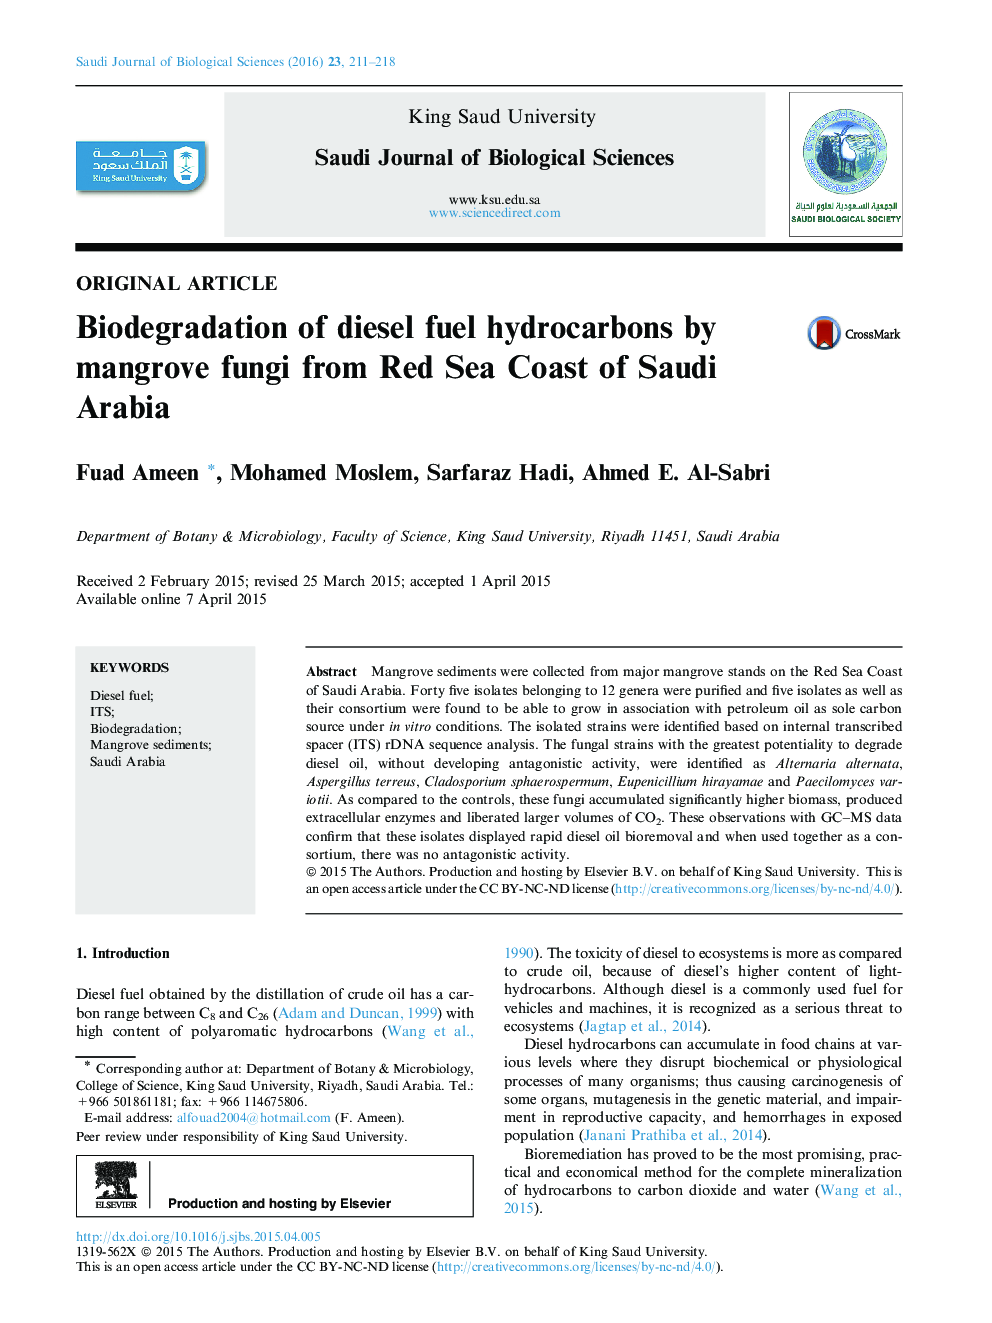 تجزیه زیستی از هیدروکربنهای دیزل توسط قارچهای مانگرو از ساحل دریای سرخ عربستان سعودی 